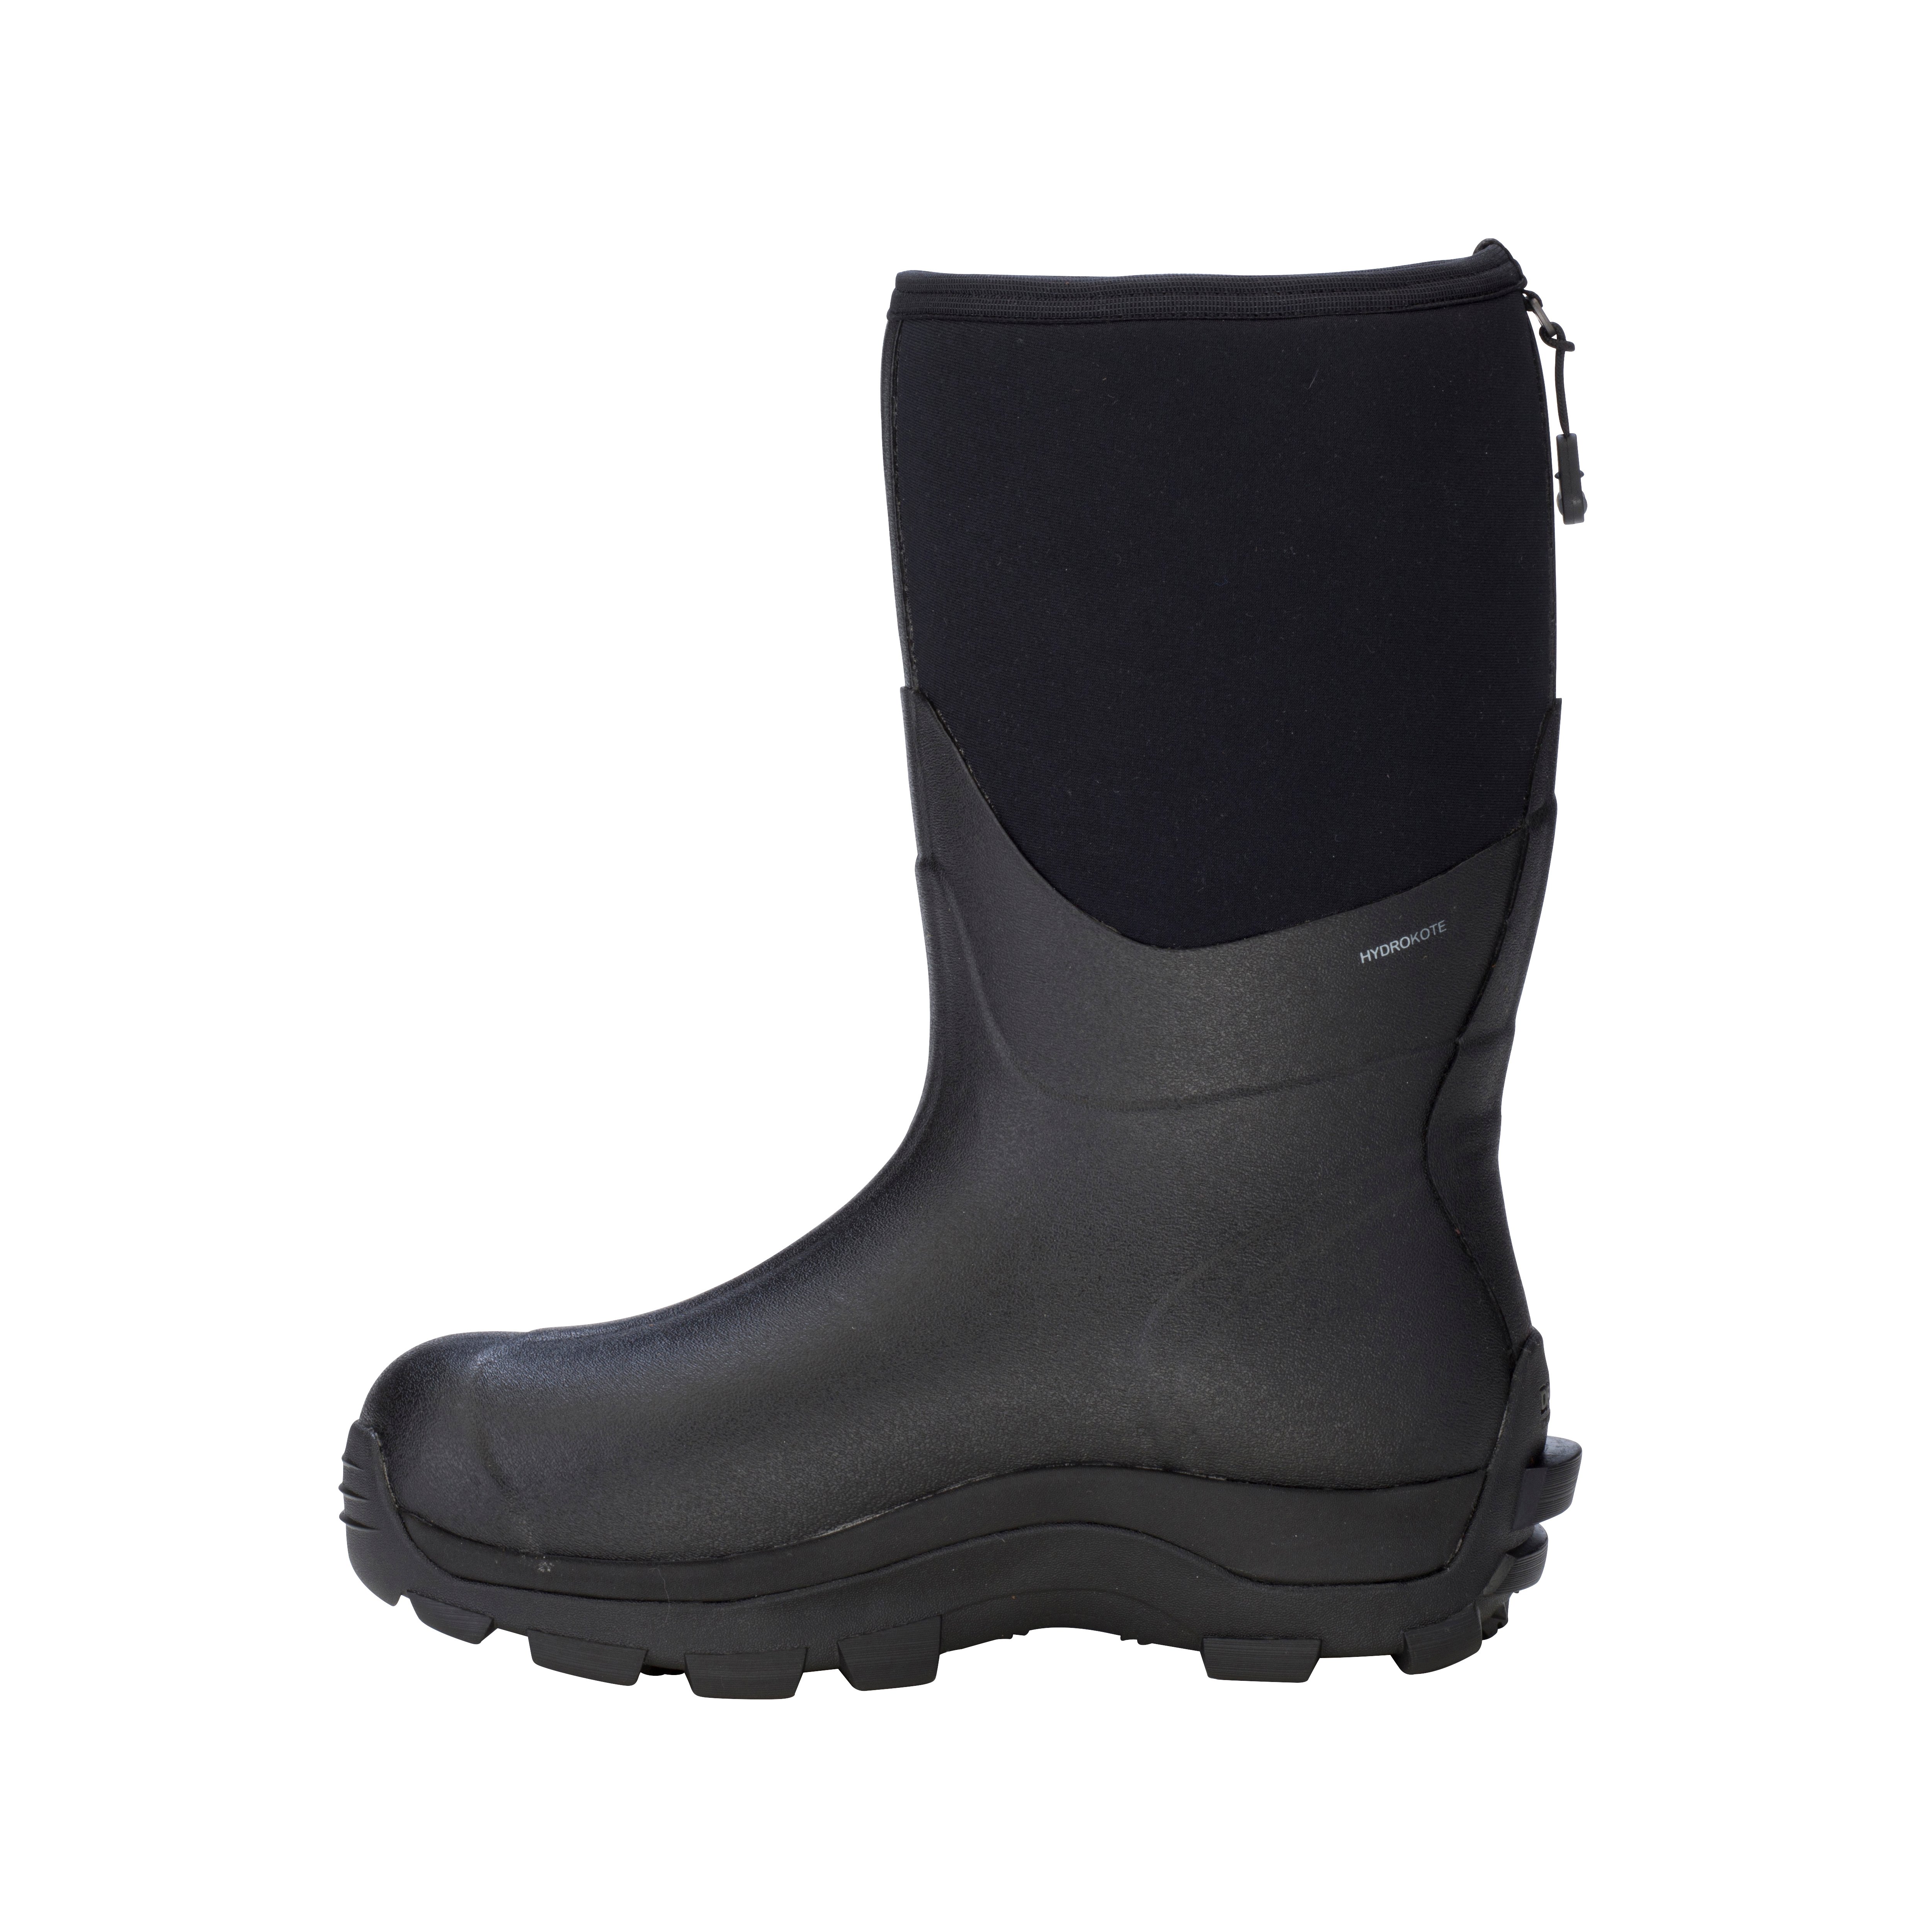 Arctic Storm Men's Mid – Dryshod Waterproof Boots